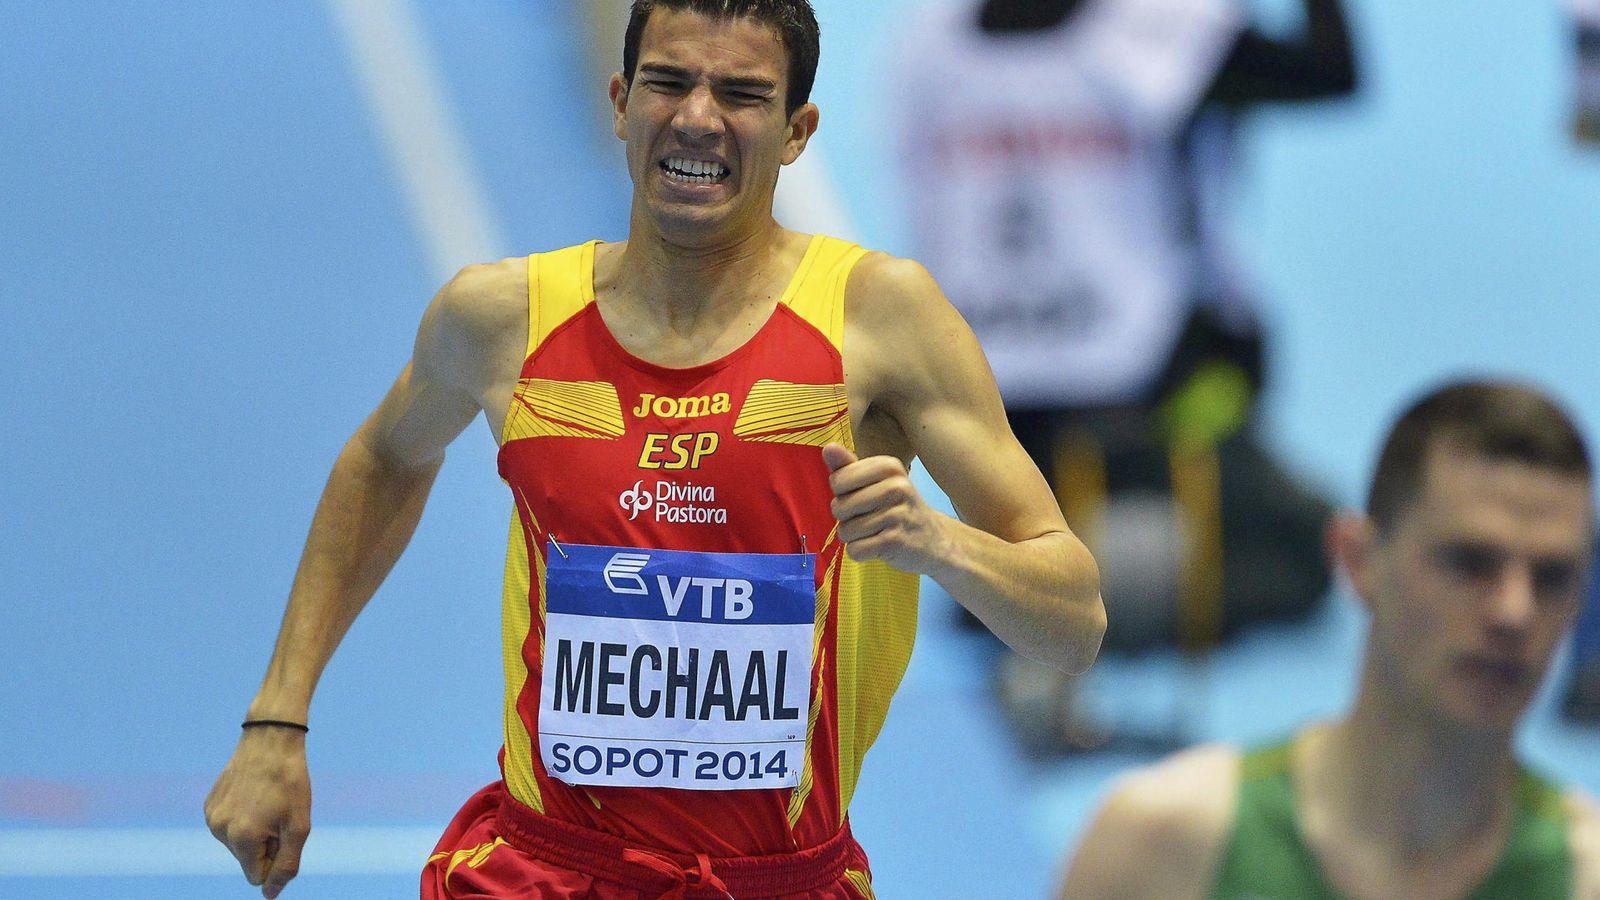 Foto: En la imagen, el atleta Adel Mechaal (EFE)